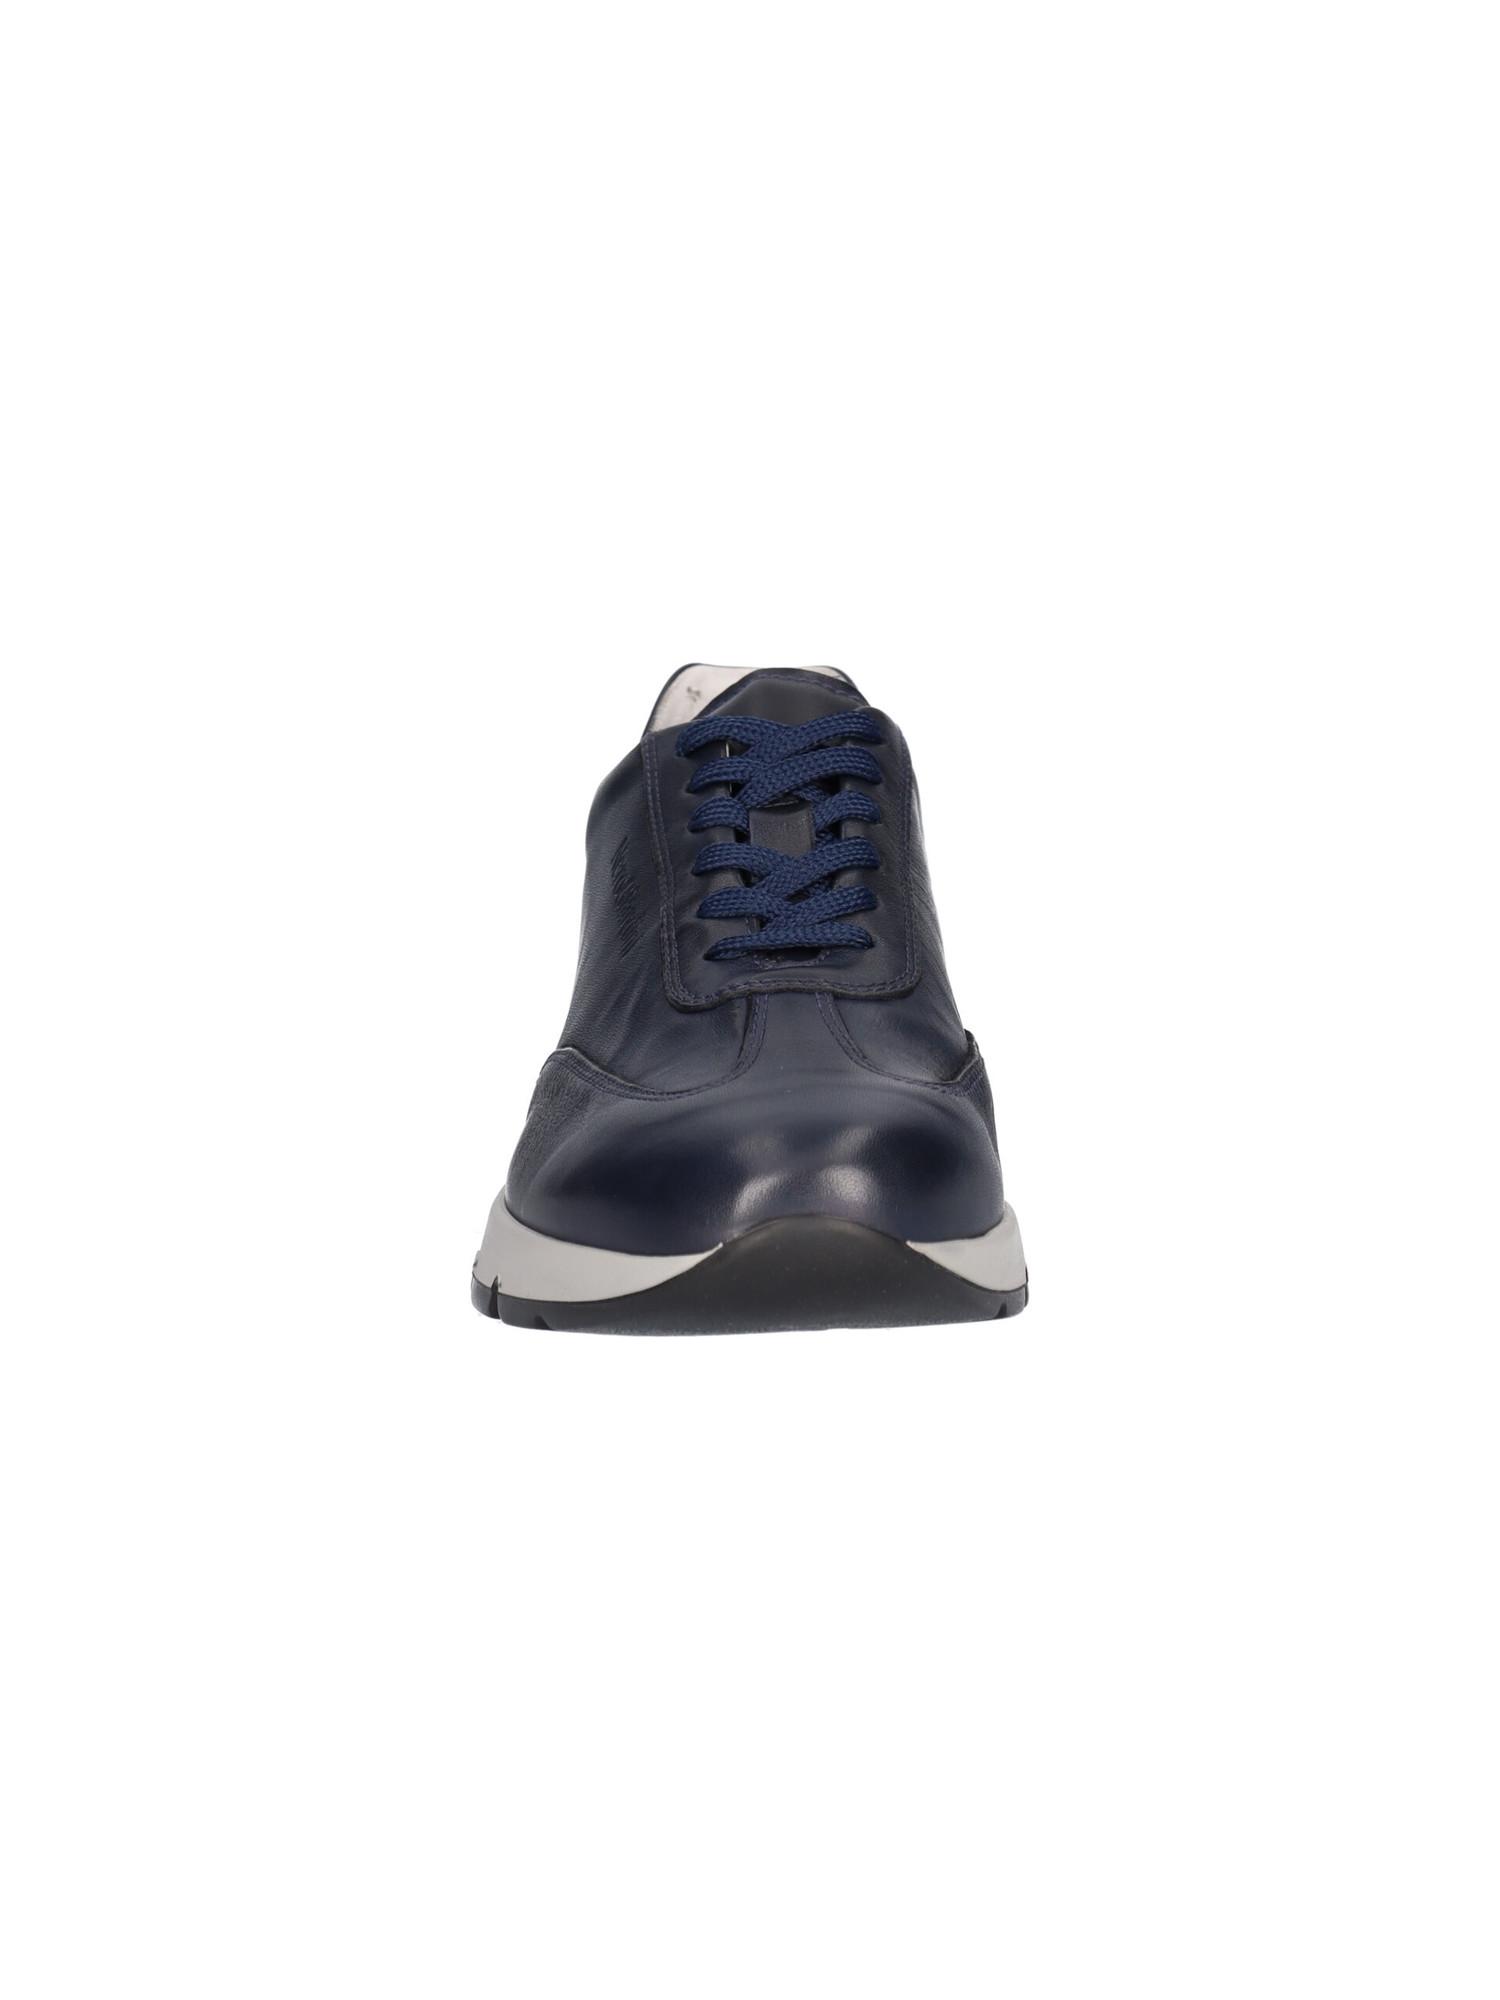 scarpa-casual-nero-giardini-da-uomo-blu-4fc2ed